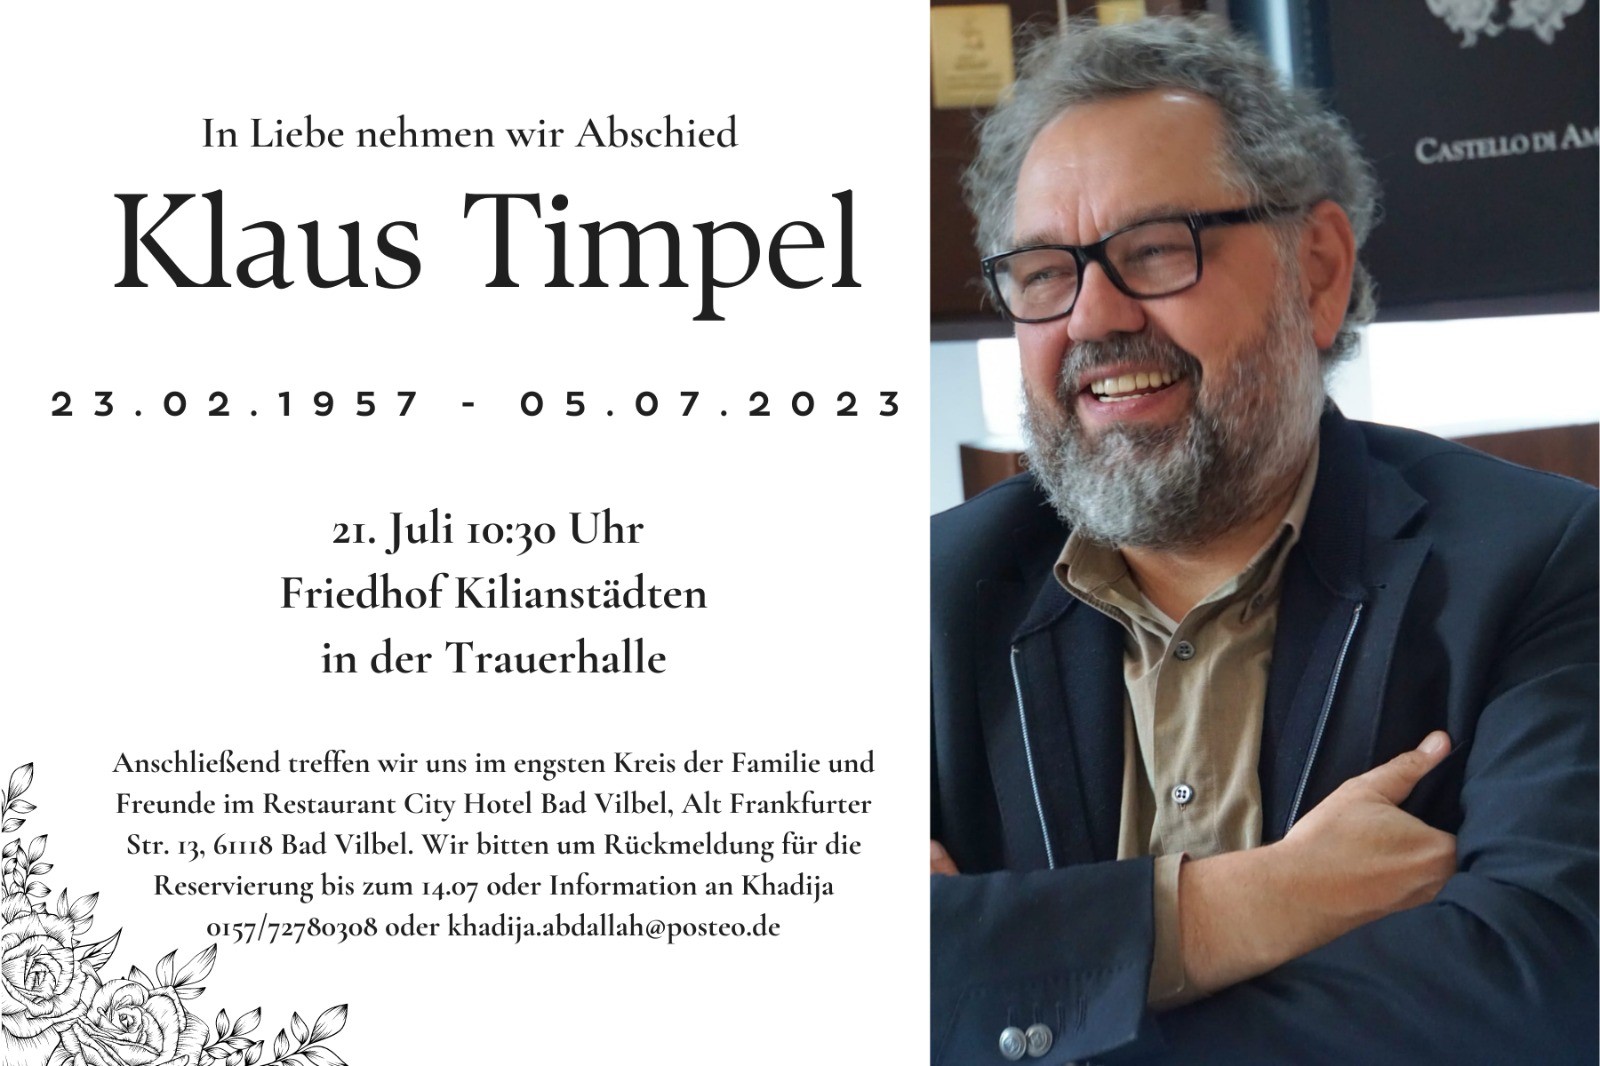 Traueranzeige Klaus Timpel